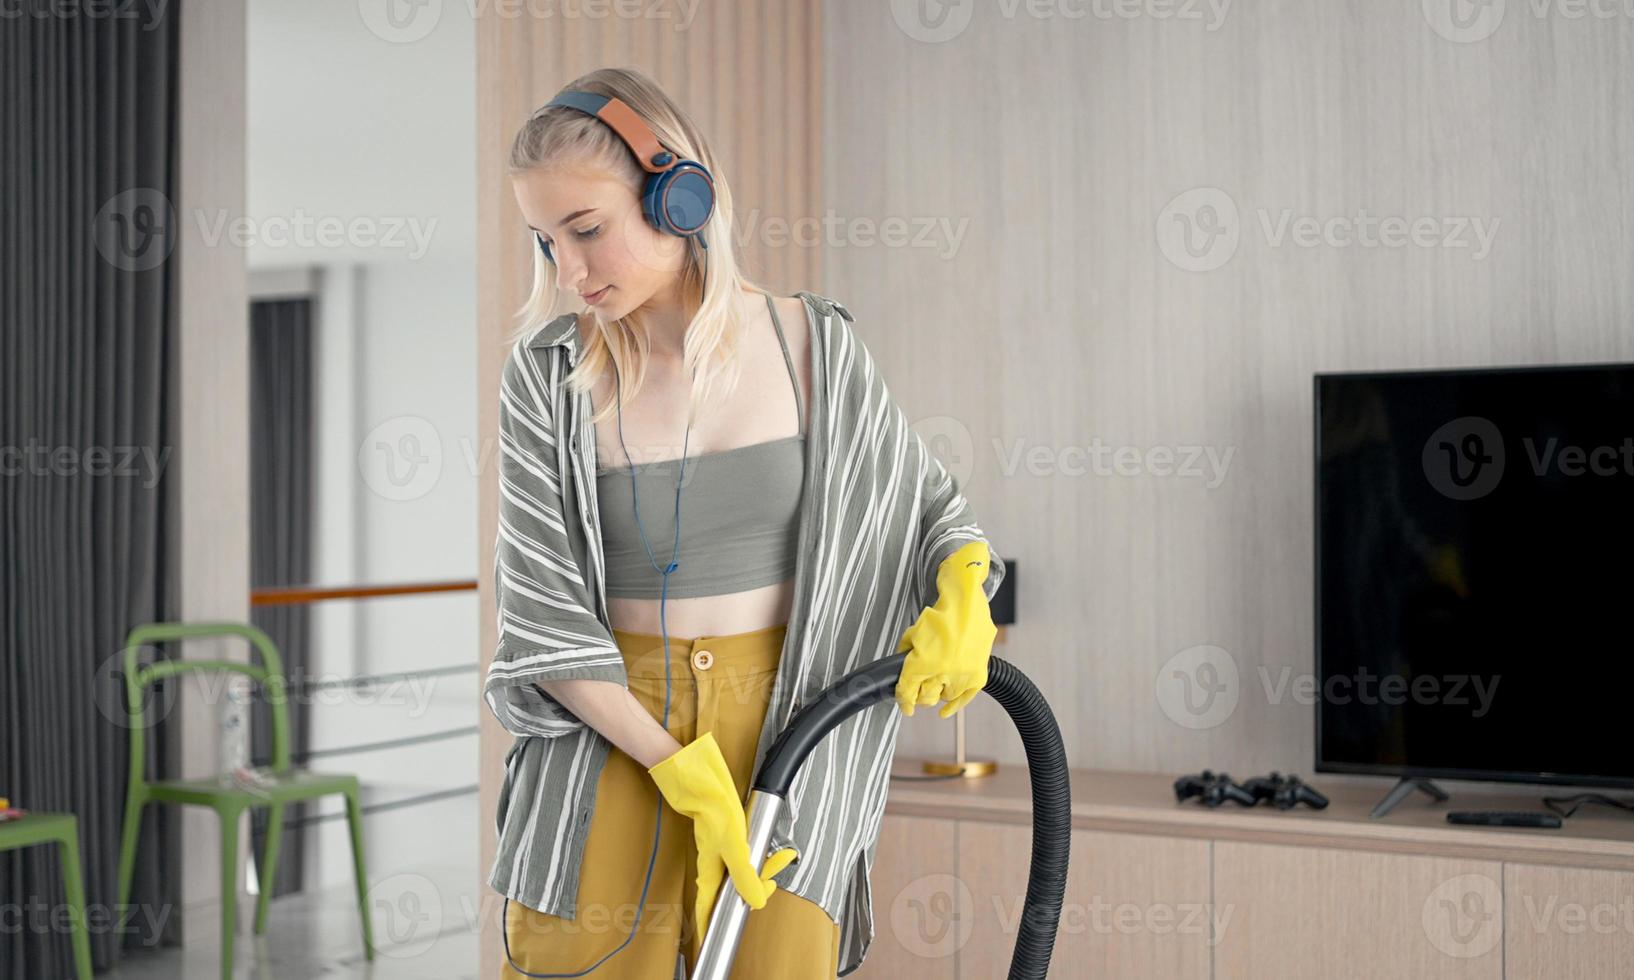 jeune fille s'amusant tout en nettoyant le sol avec un aspirateur. une femme heureuse faisant le ménage à la maison écoute de la musique avec des écouteurs. photo